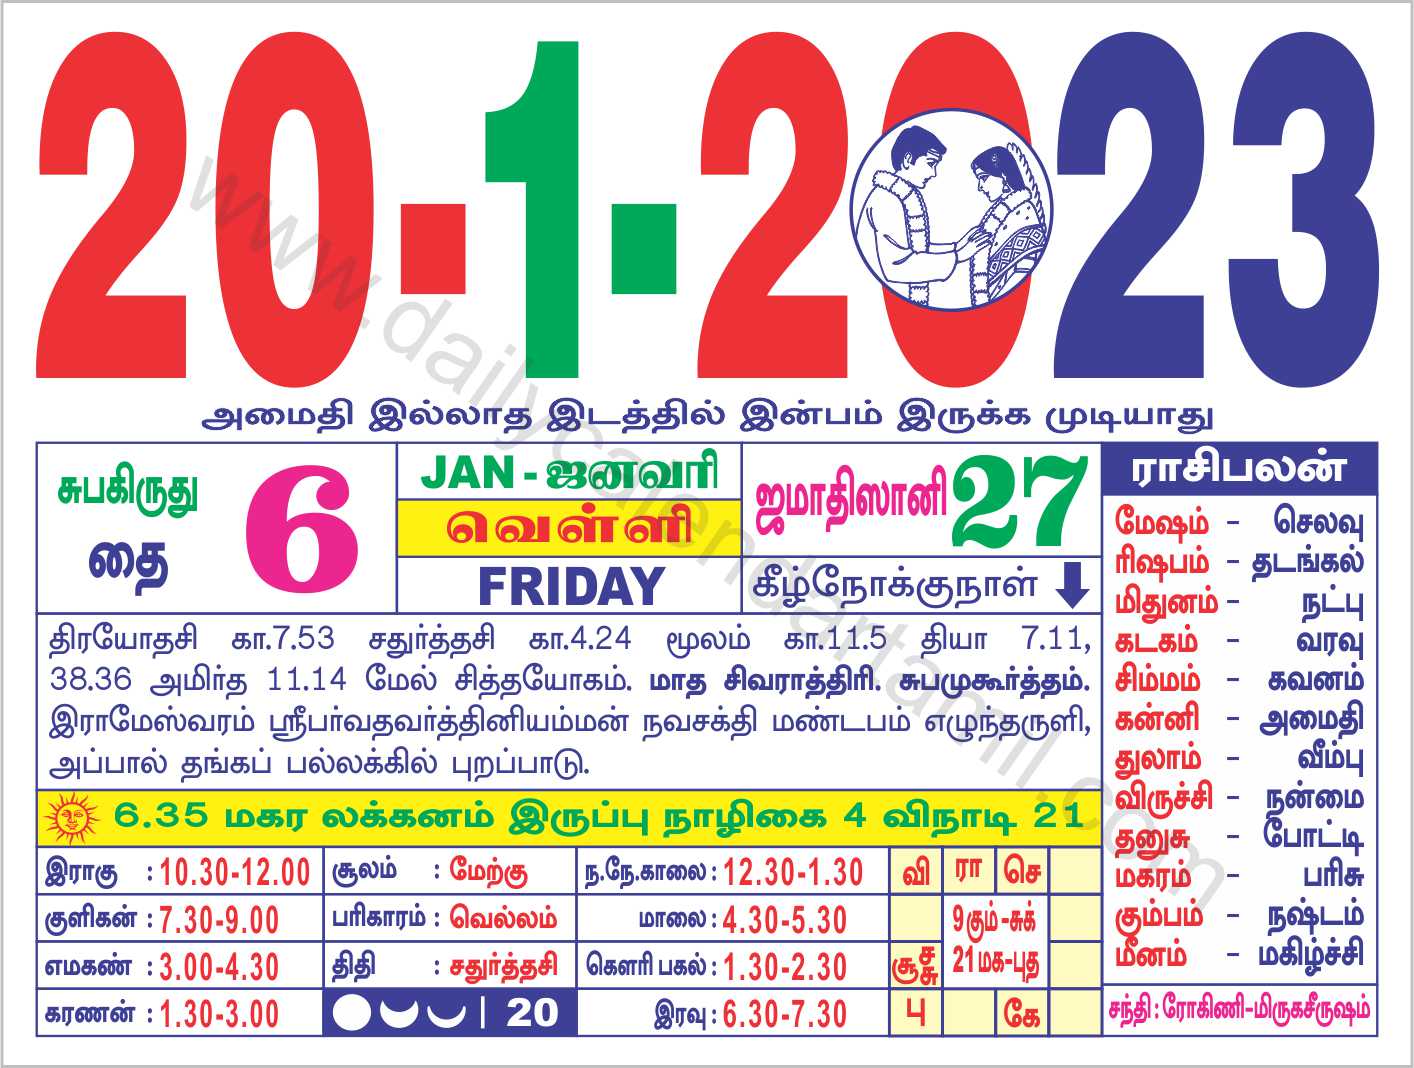 Valarpirai & Theipirai Muhurtham Dates in January 2023